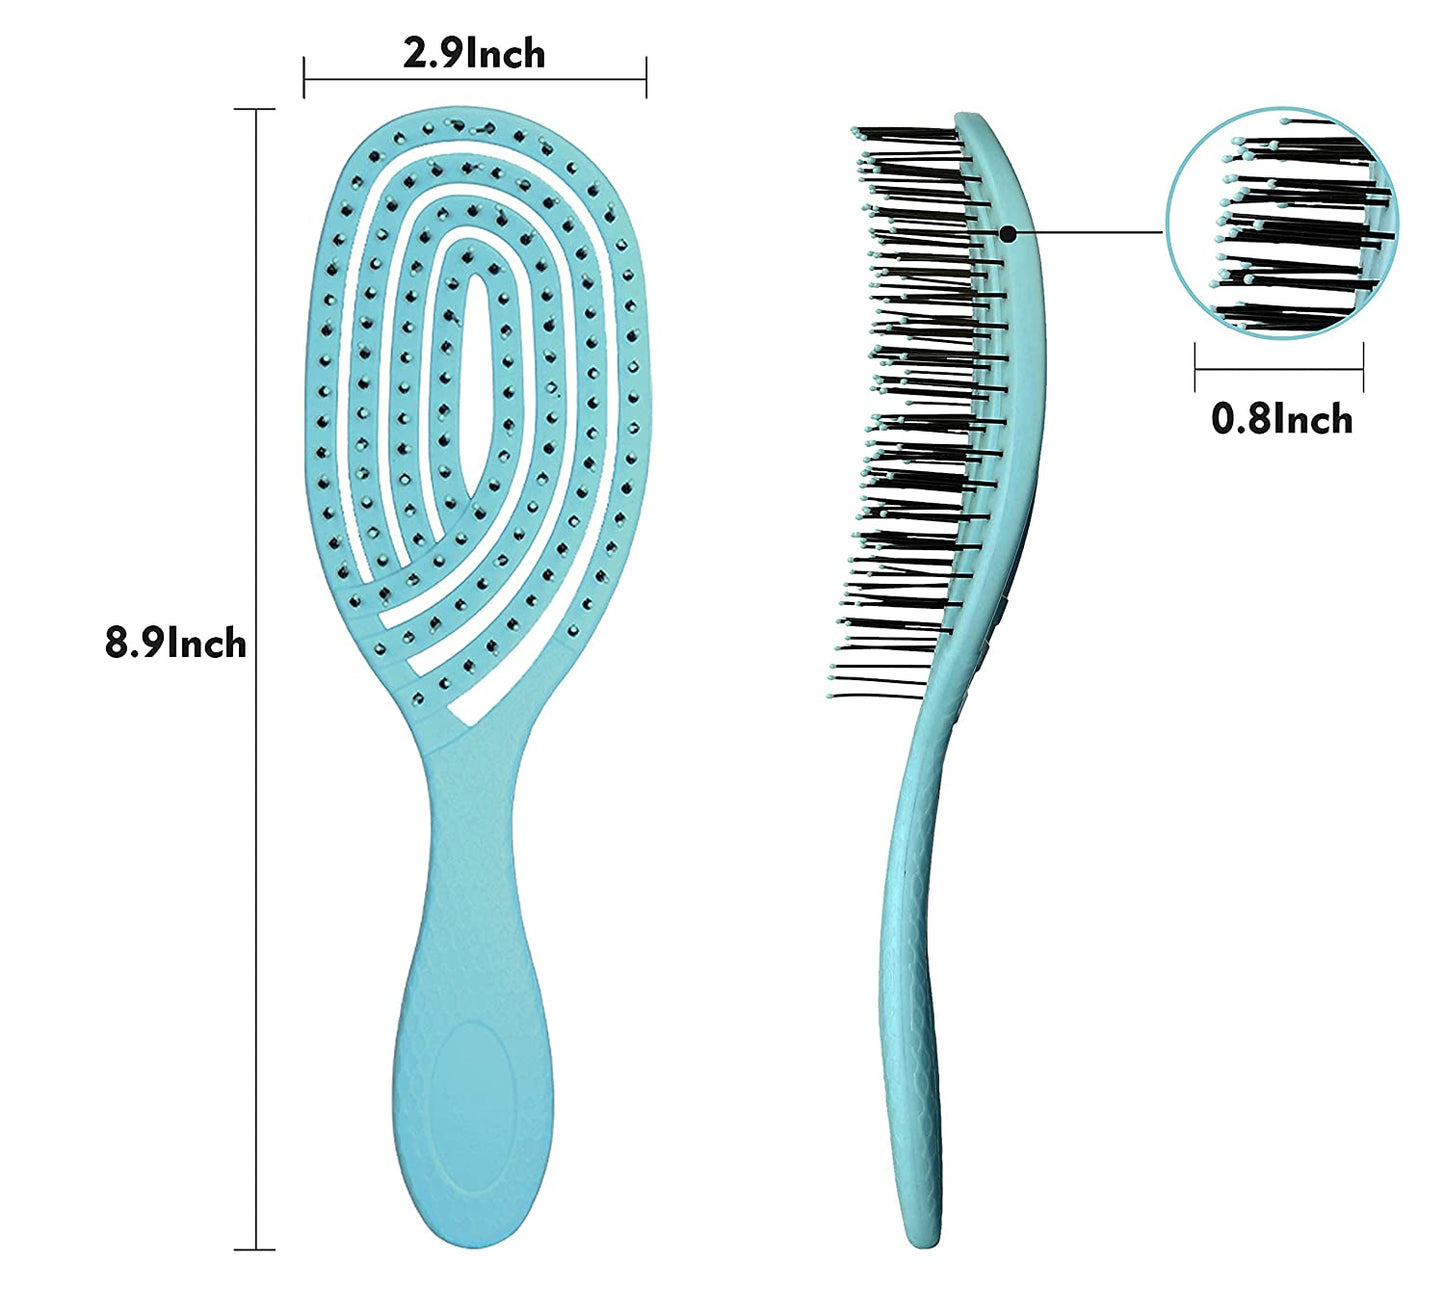 Detangling Hair Brush Wet Brush Large Maze Style Detangler Hair Brush Ultra-Soft Bristles Vented Design For Curly Straight Women Men Kids Toddlers Wet and Dry Hair Blue